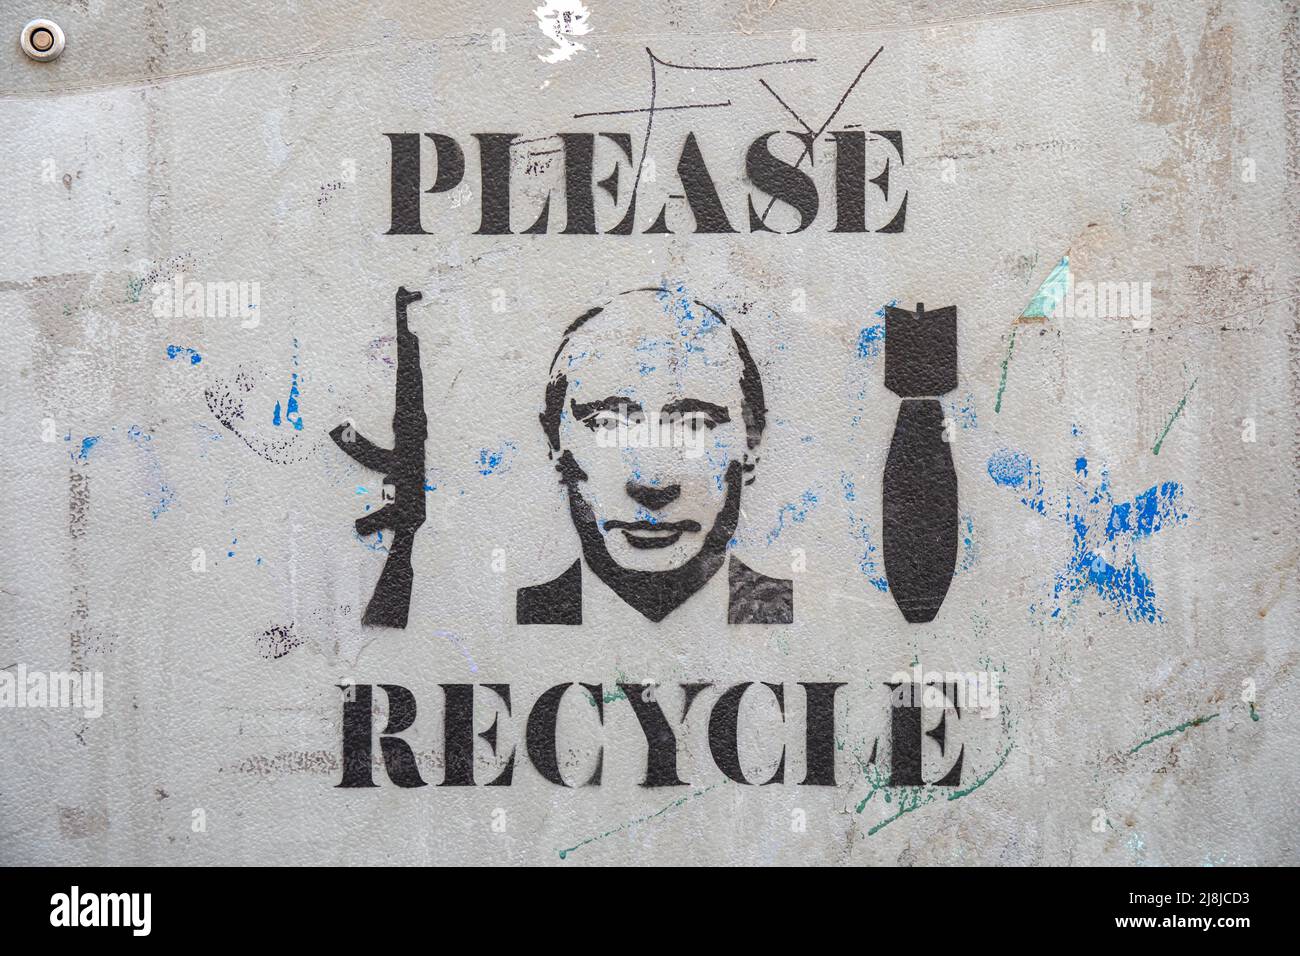 Please recycle. Anti-Putin stencil graffiti. Stock Photo